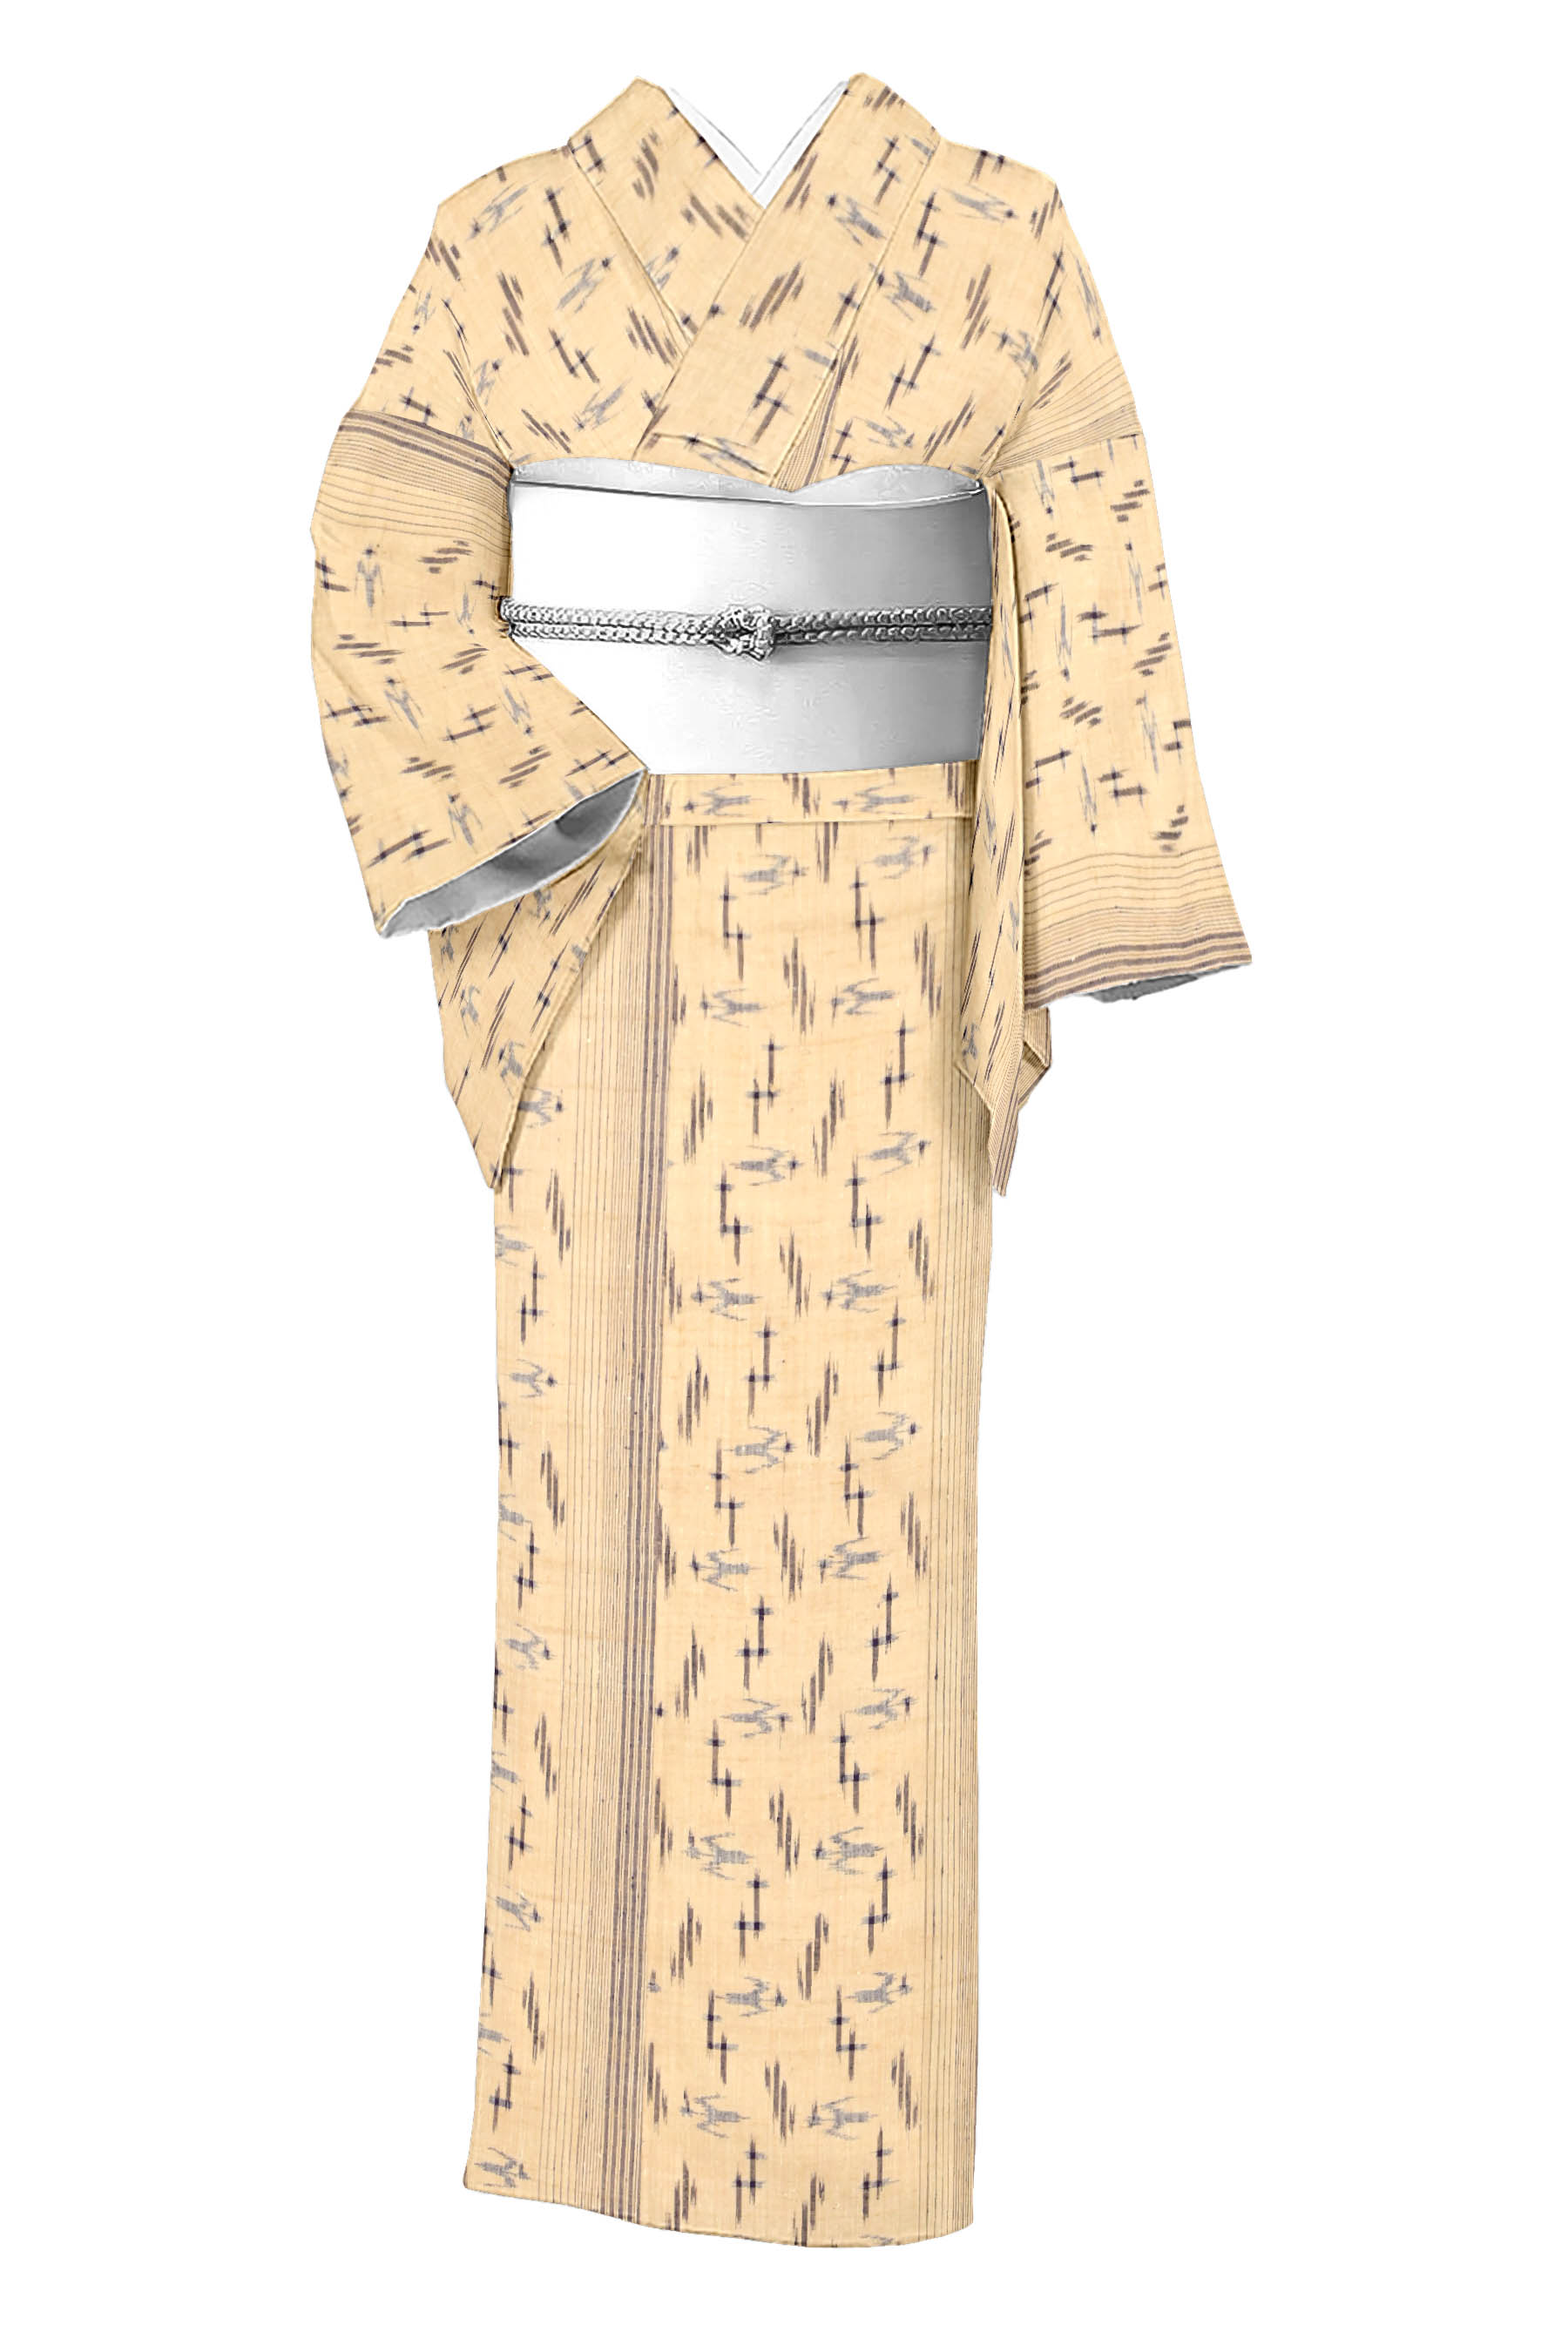 民芸紬】高級手縫いお仕立て着物 日本の絹 - 着物